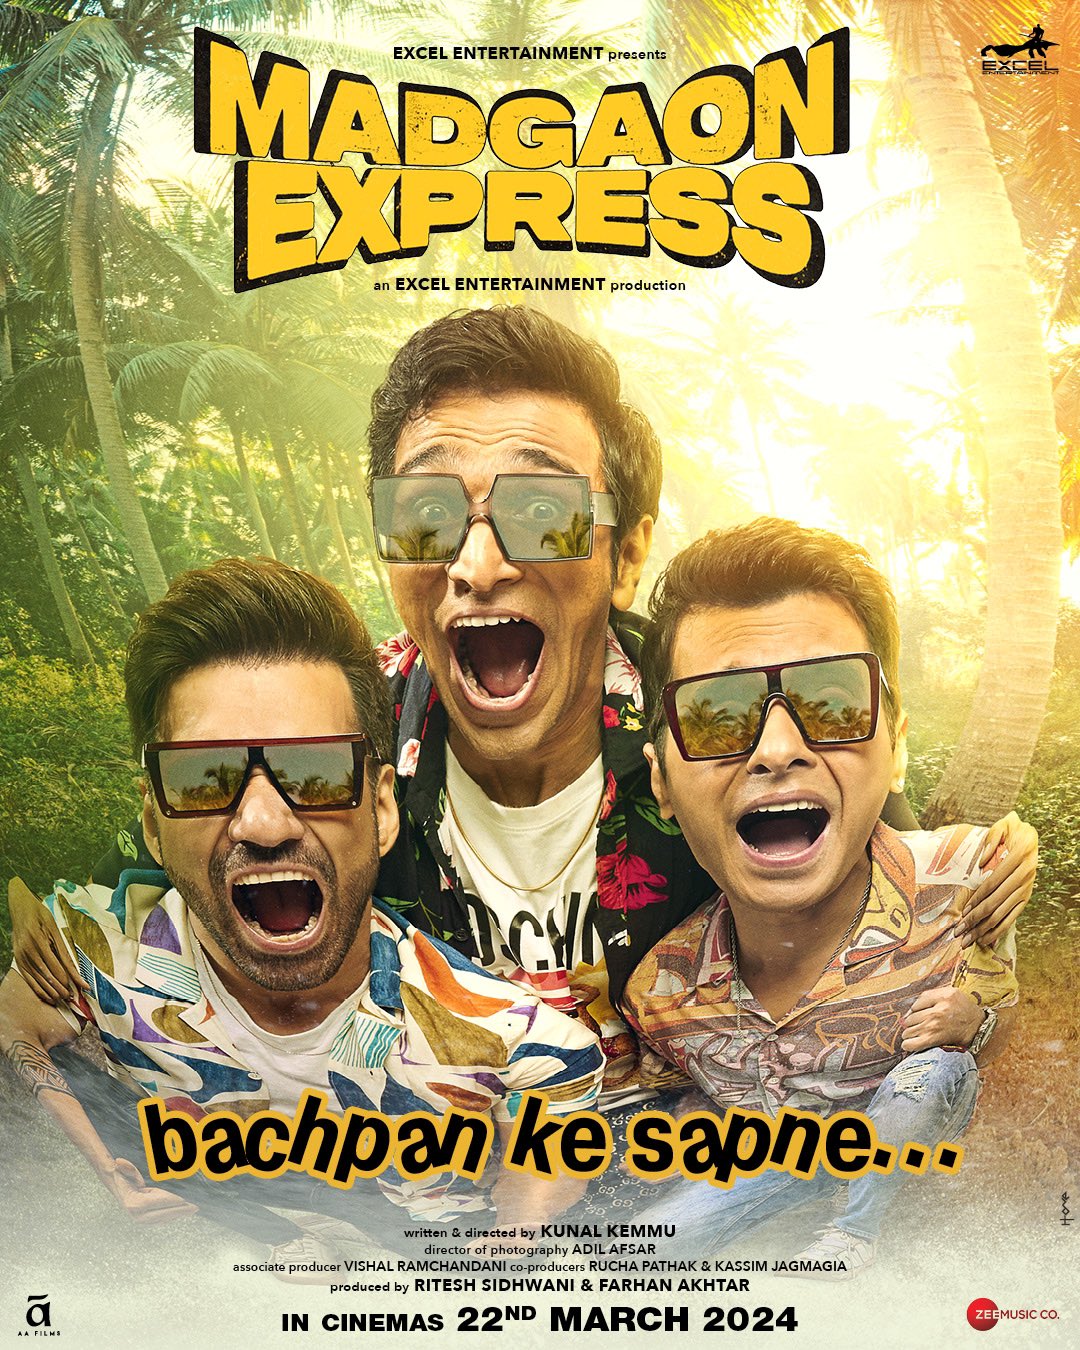 road trip movie in hindi